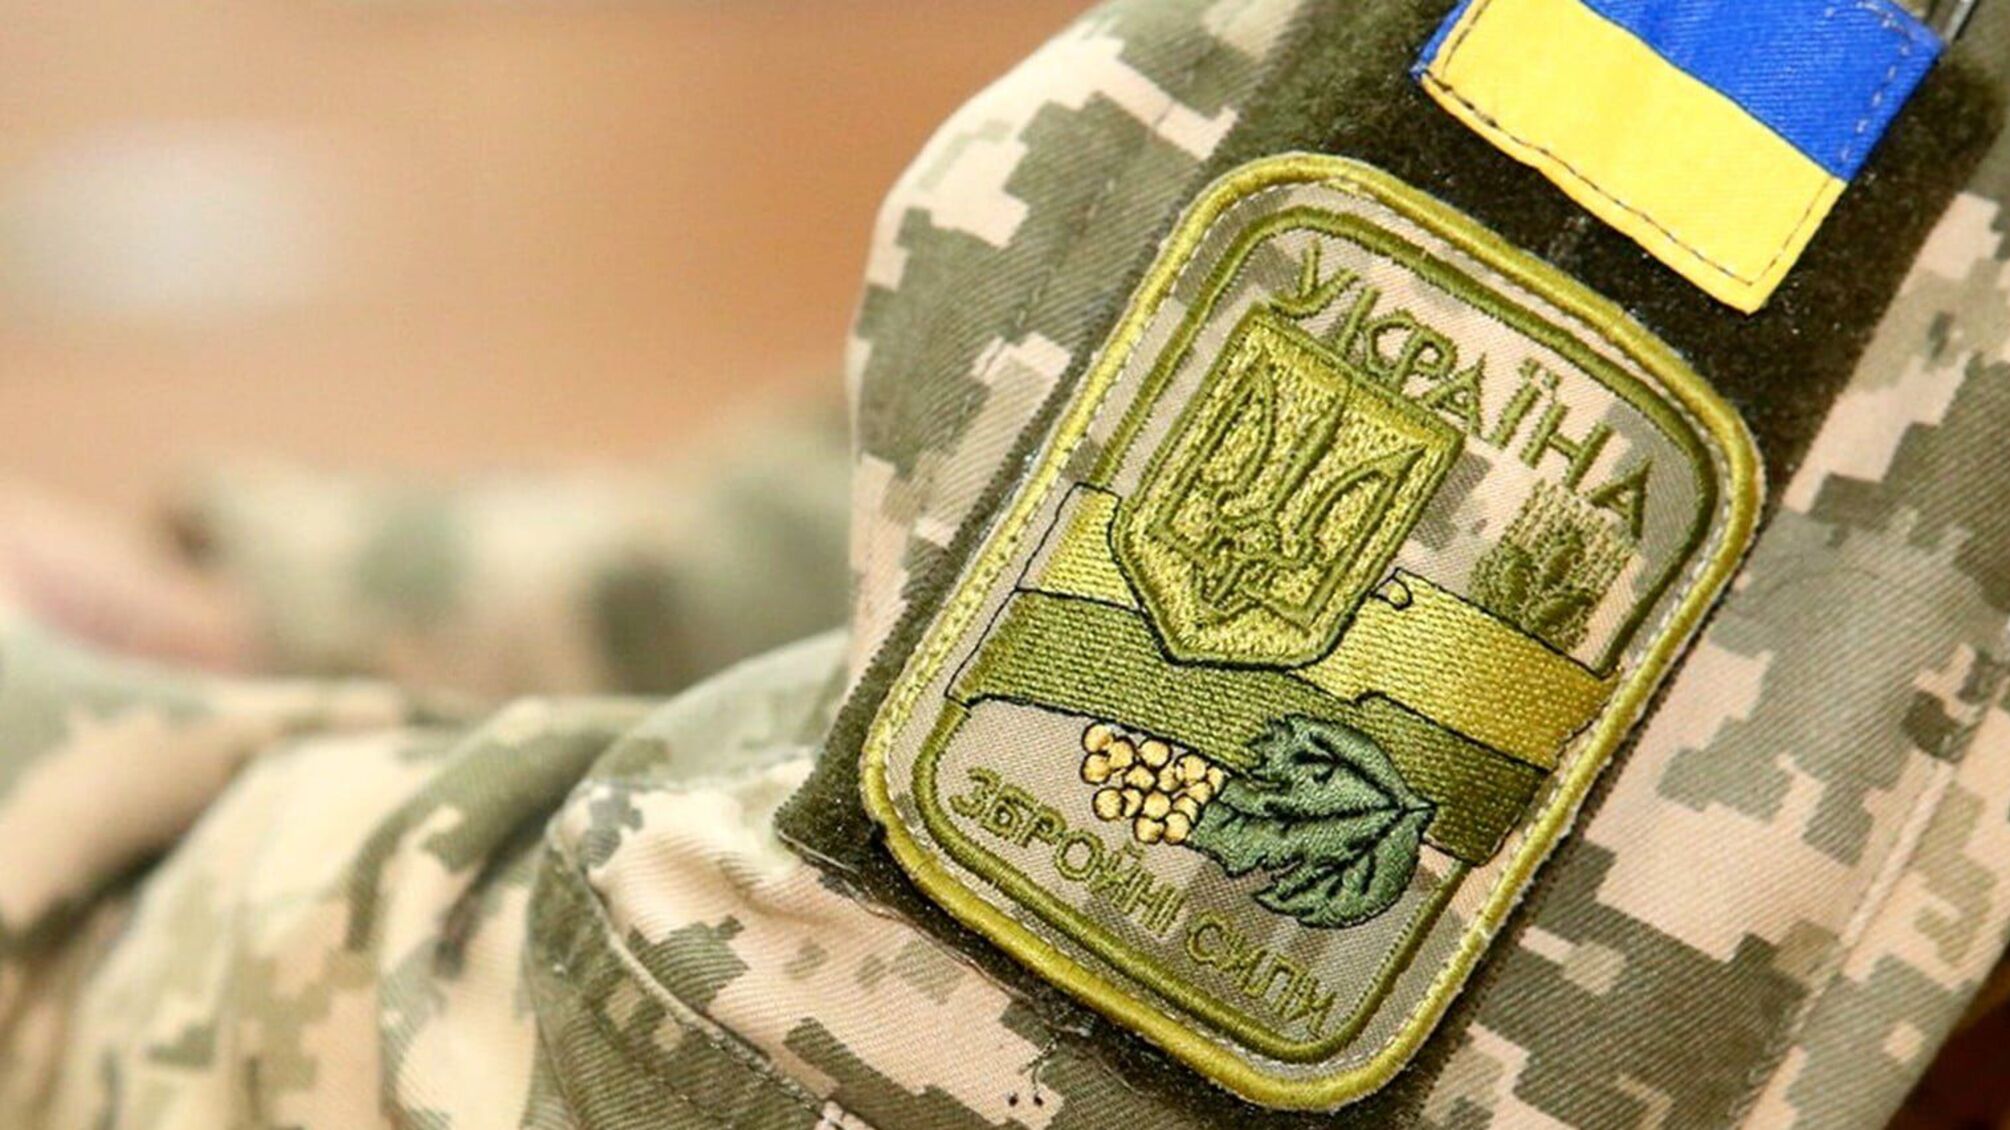 Гучне самогубство бійця ЗСУ на Донбасі: причини й деталі НП тримають в таємниці, відкрито кримінальну справу